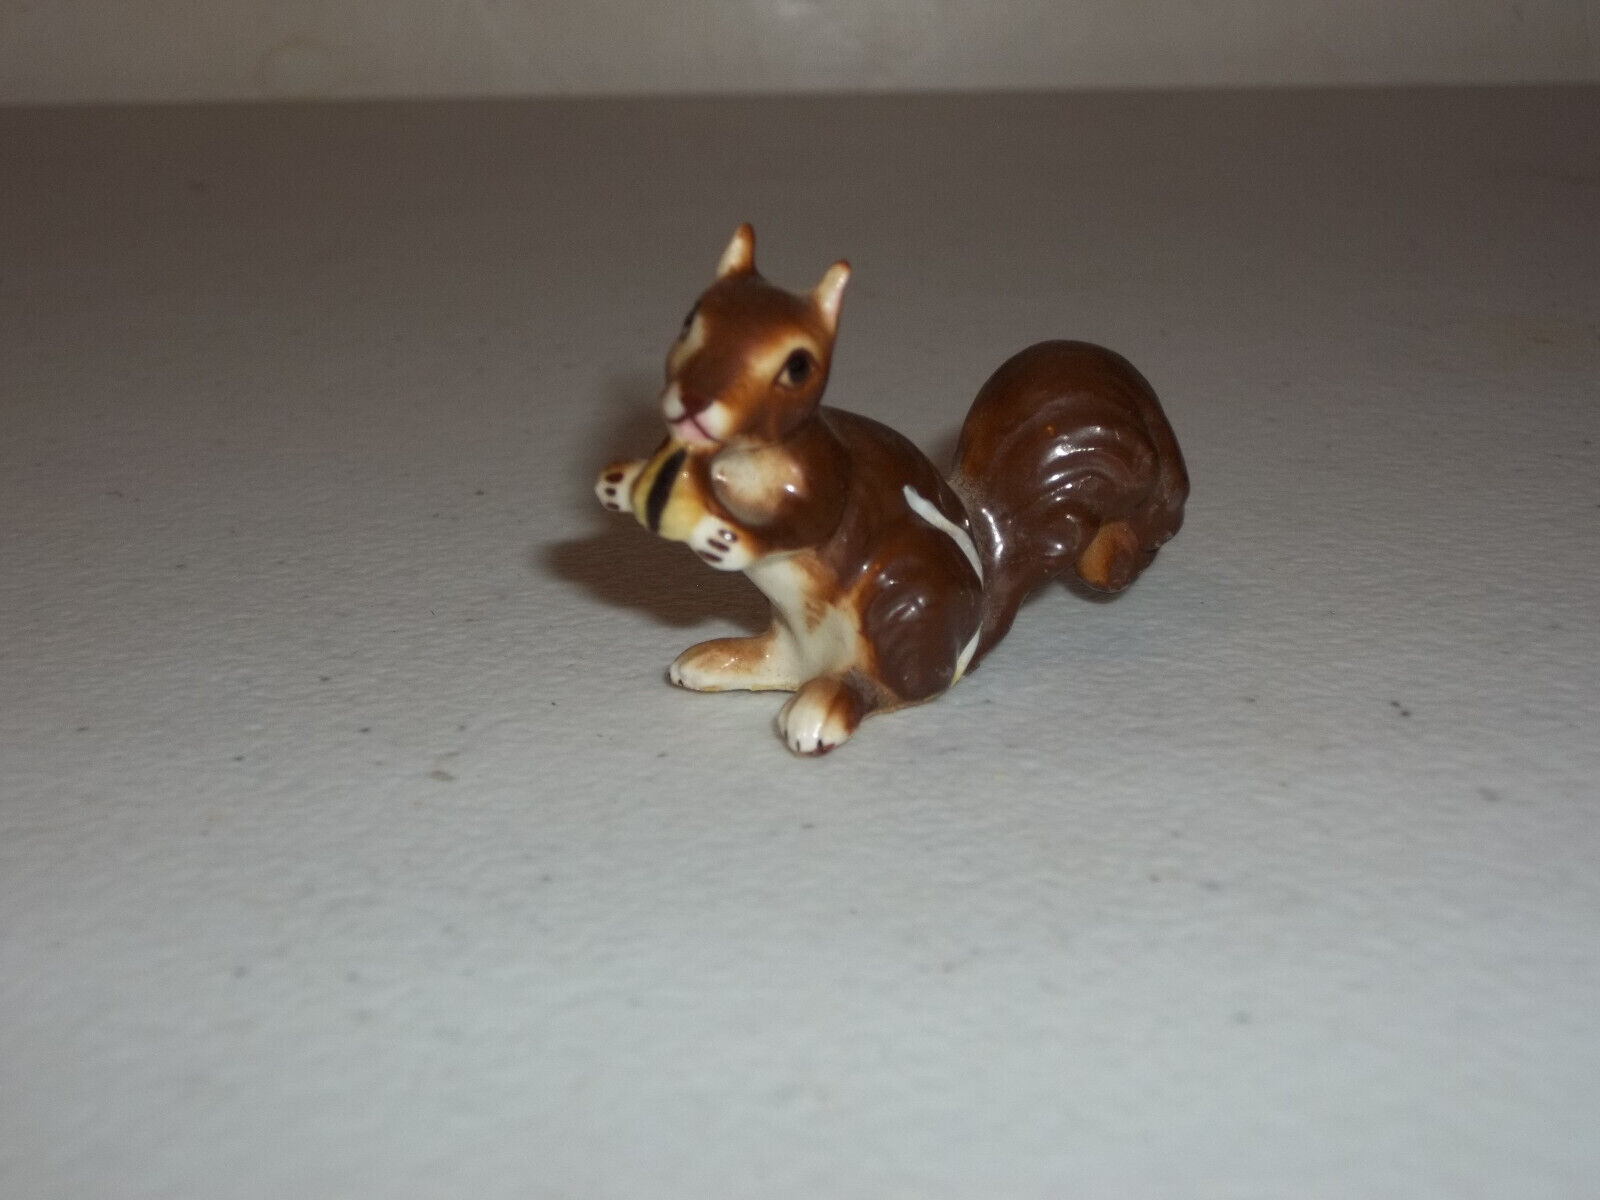 Vintage Ceramic Porcelain Squirrel Figurine Adorable 1.25” Shelf Sitter Decor